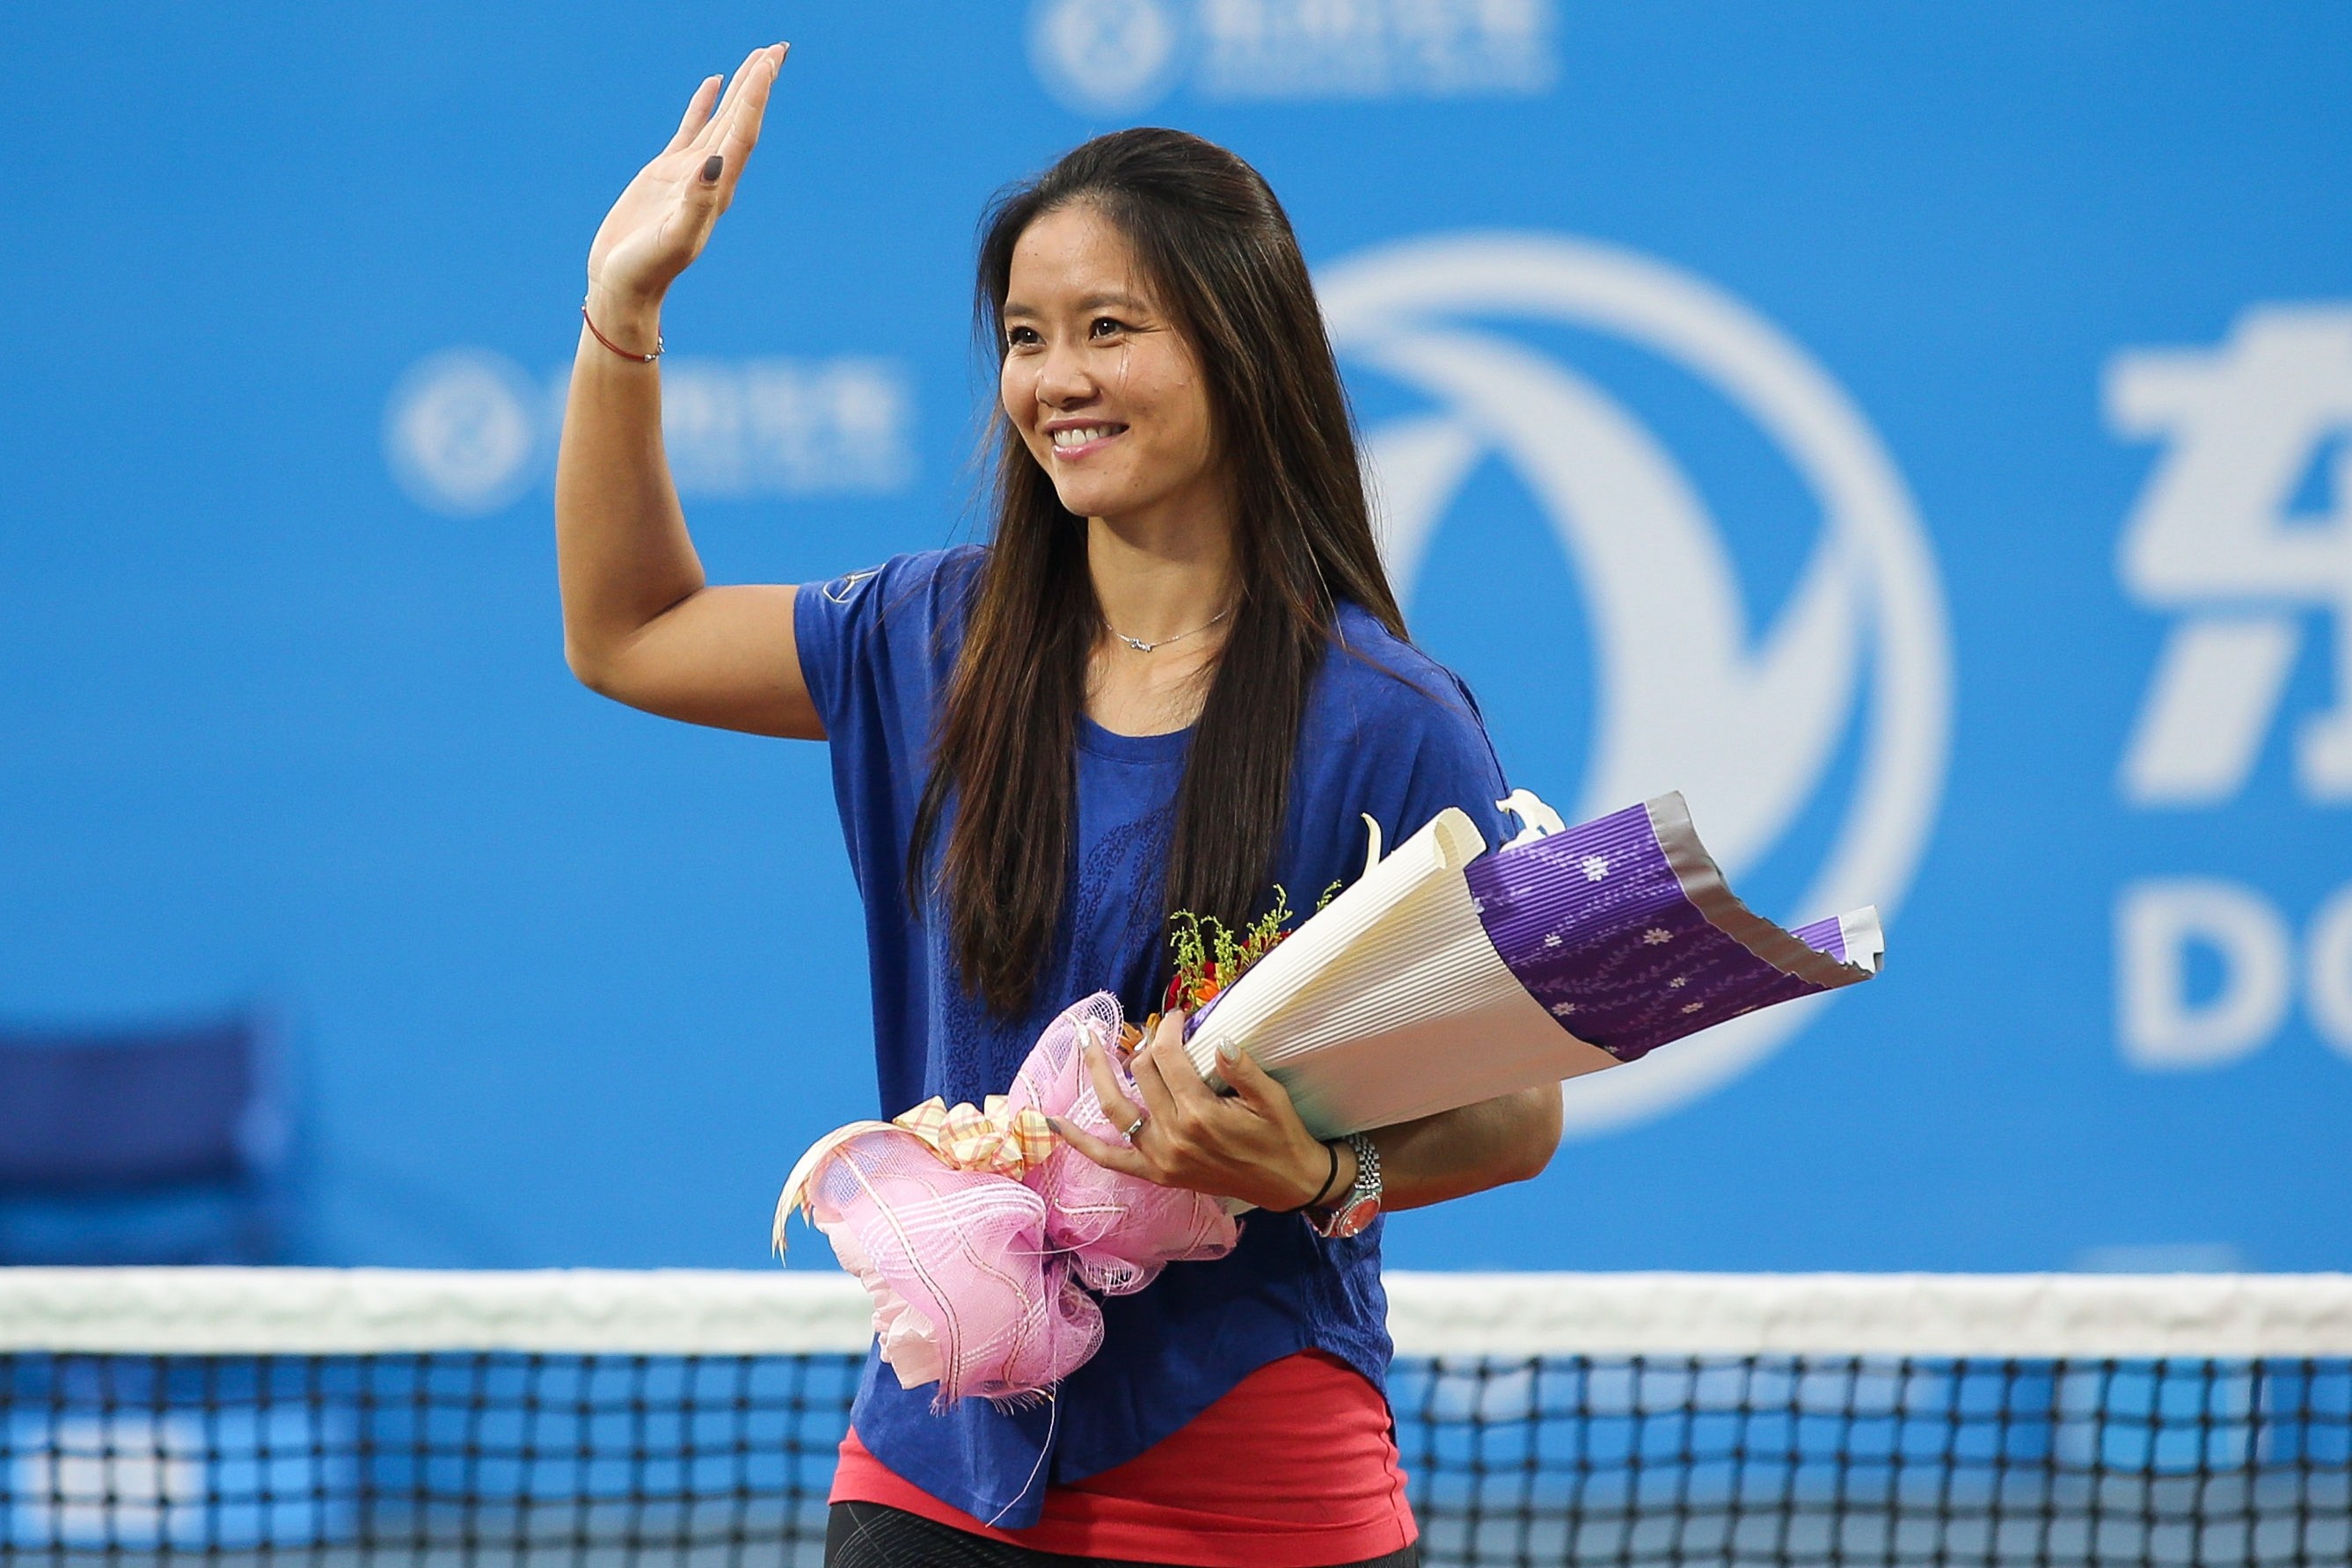 9月30日,中国网球一姐李娜将在国家网球中心钻石球场举行退役仪式